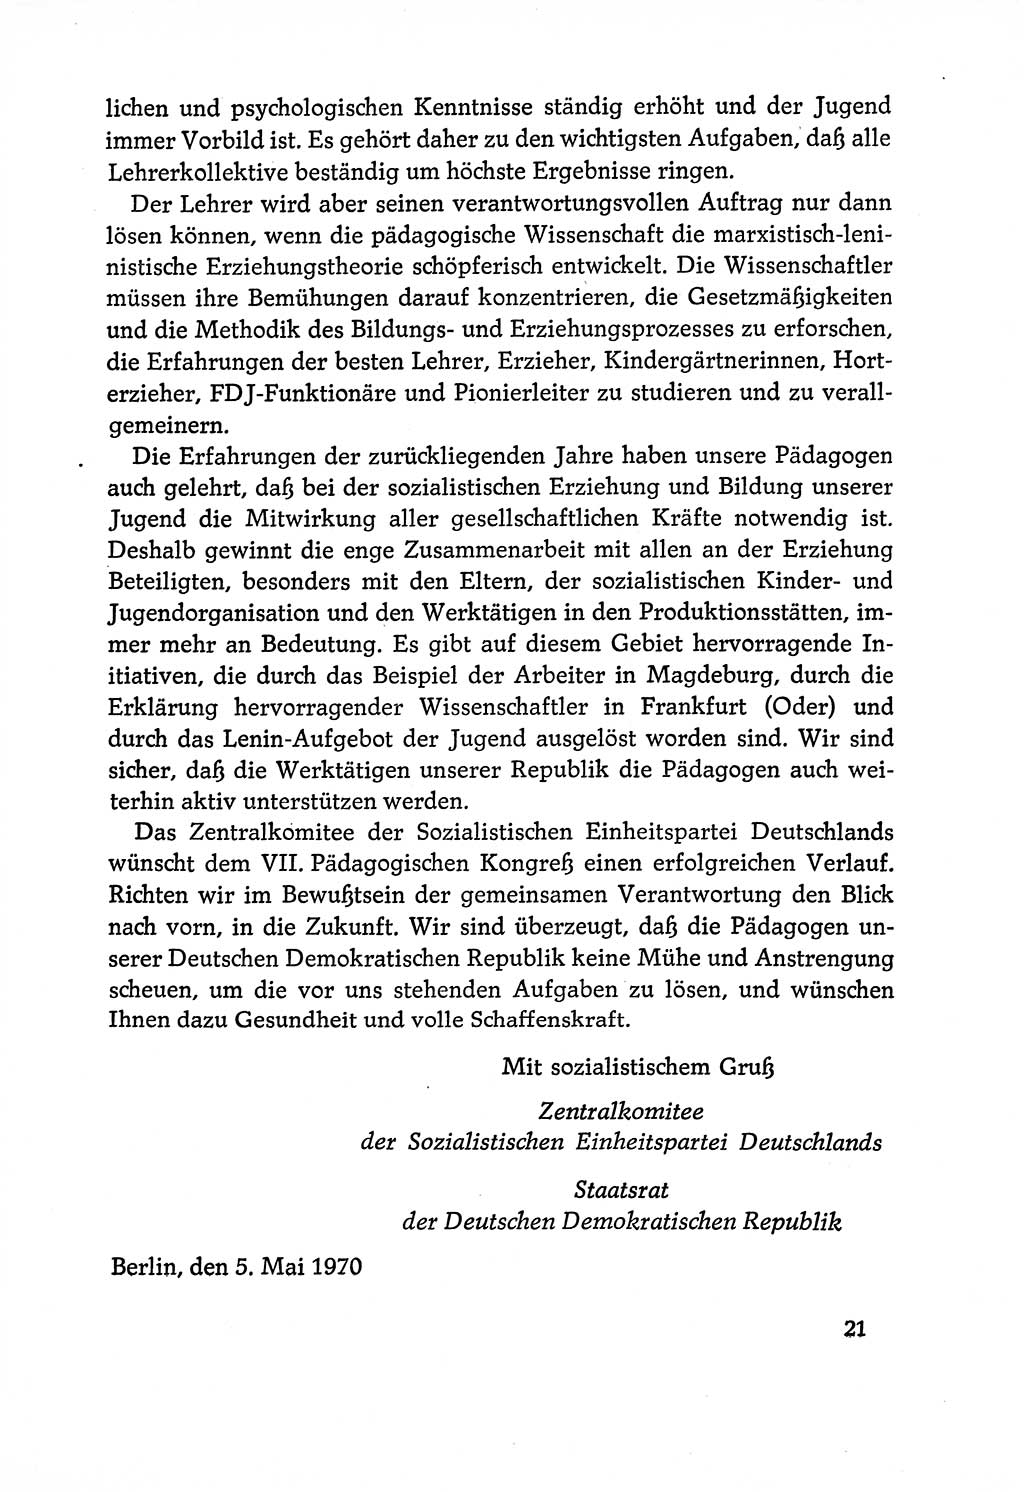 Dokumente der Sozialistischen Einheitspartei Deutschlands (SED) [Deutsche Demokratische Republik (DDR)] 1970-1971, Seite 21 (Dok. SED DDR 1970-1971, S. 21)